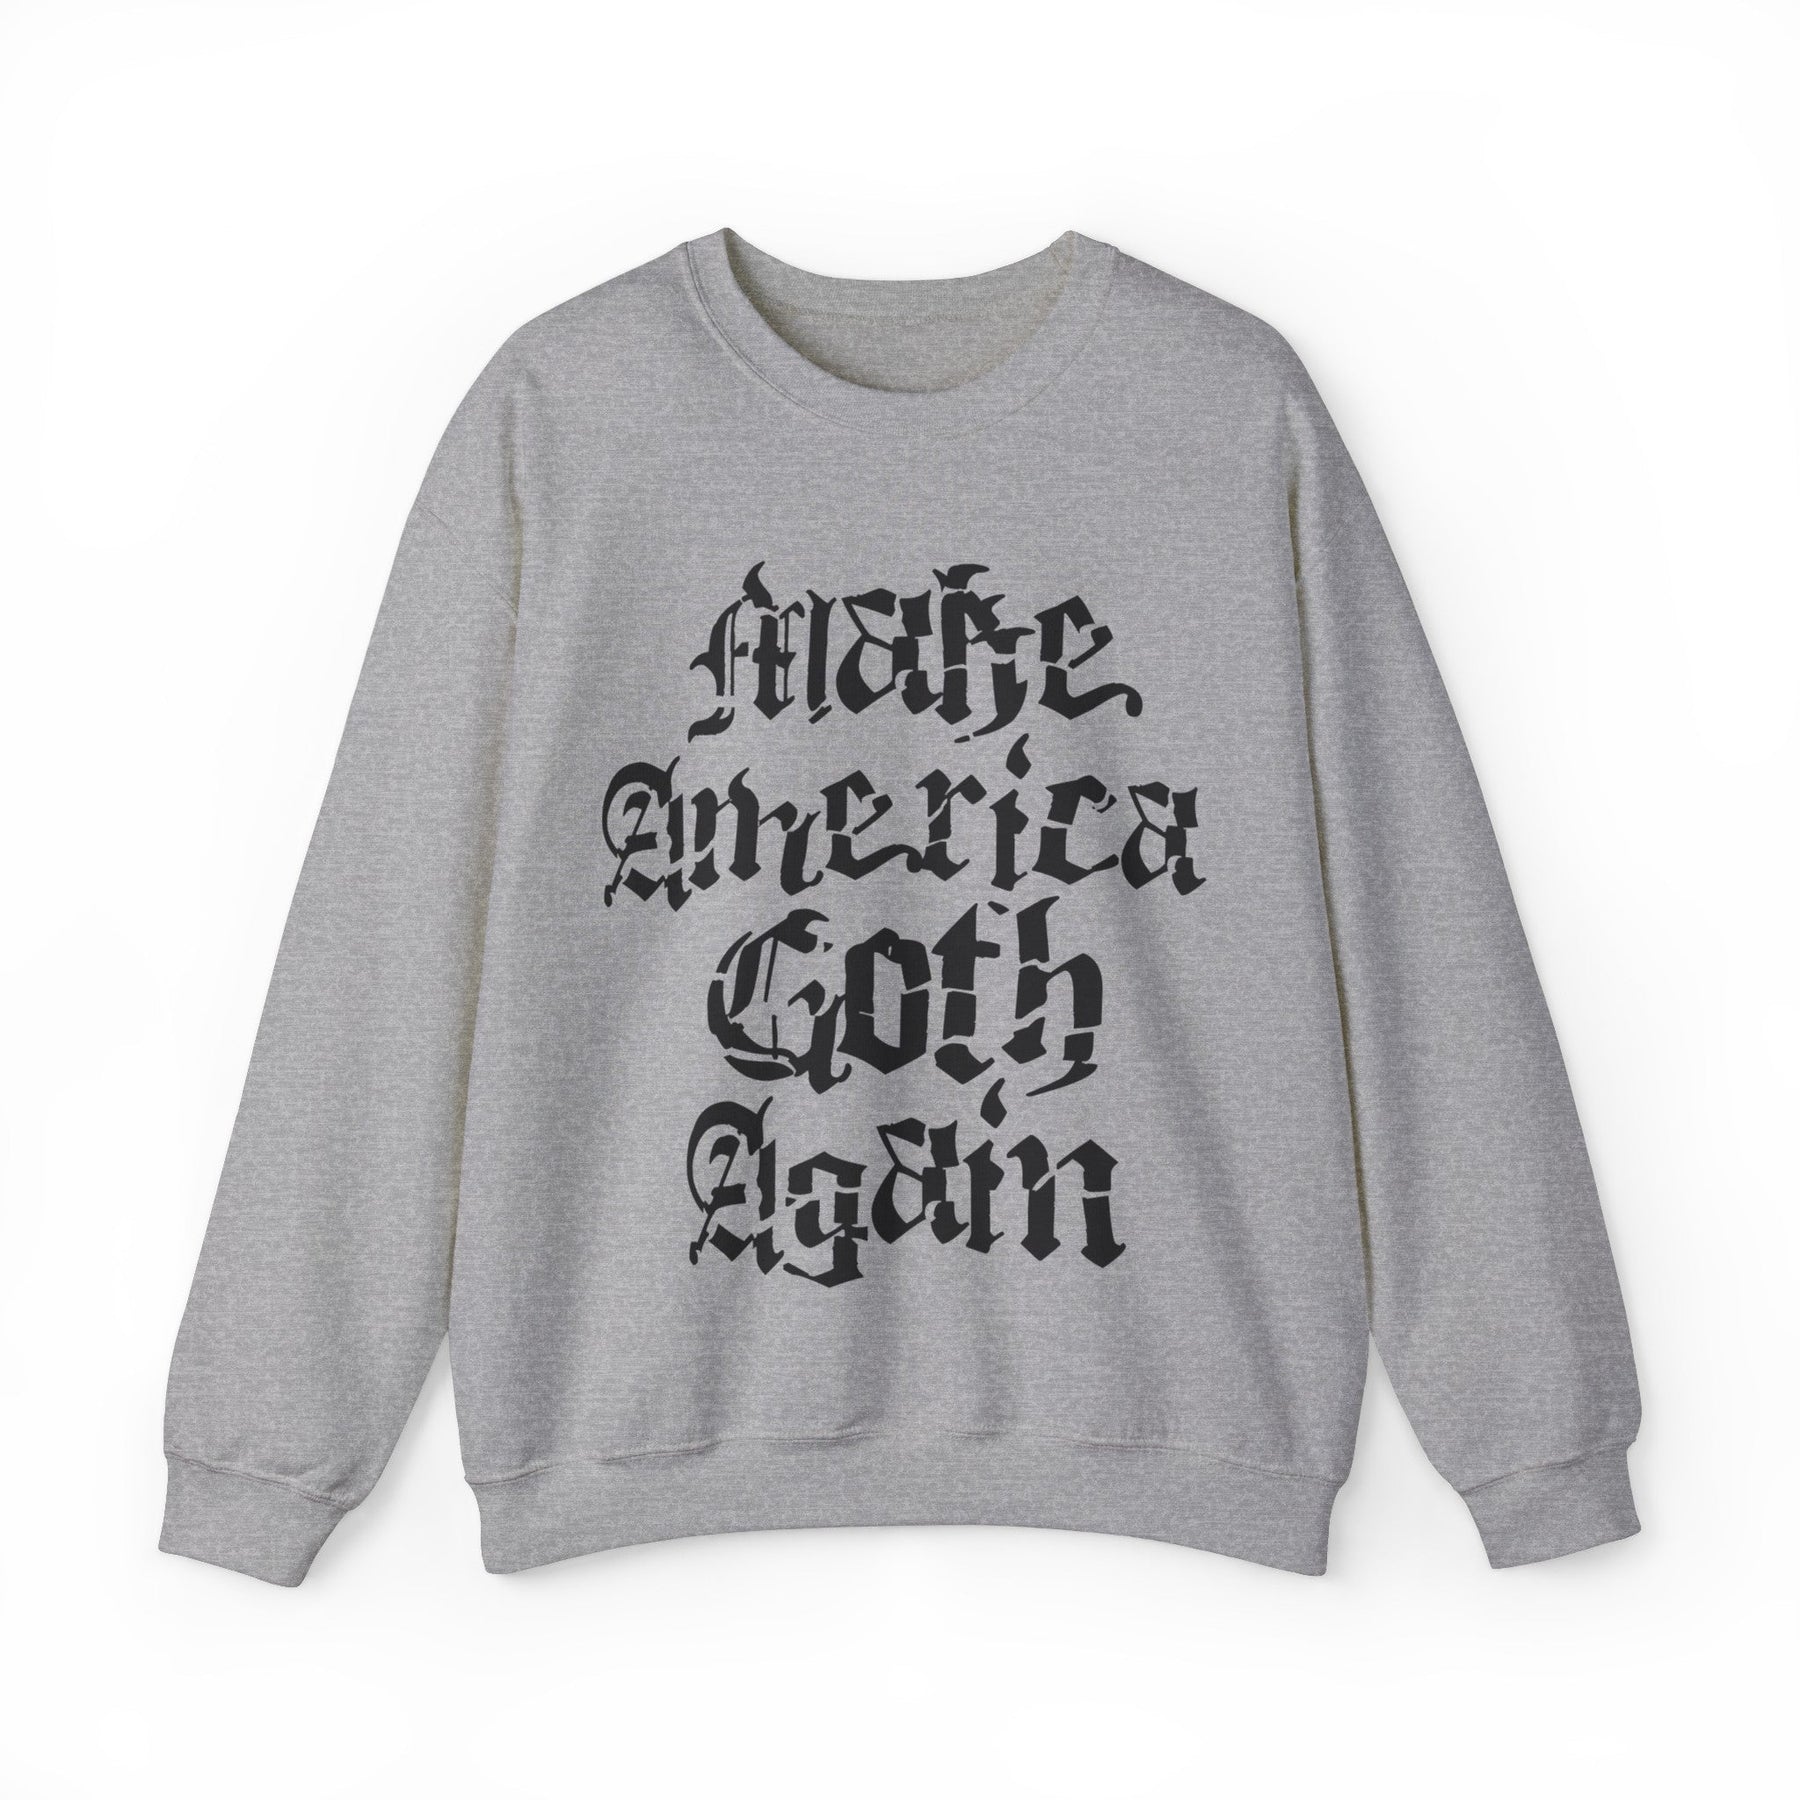 Make America Goth Again Crewneck Sweatshirt - Goth Cloth Co.Sweatshirt29861534192587642813